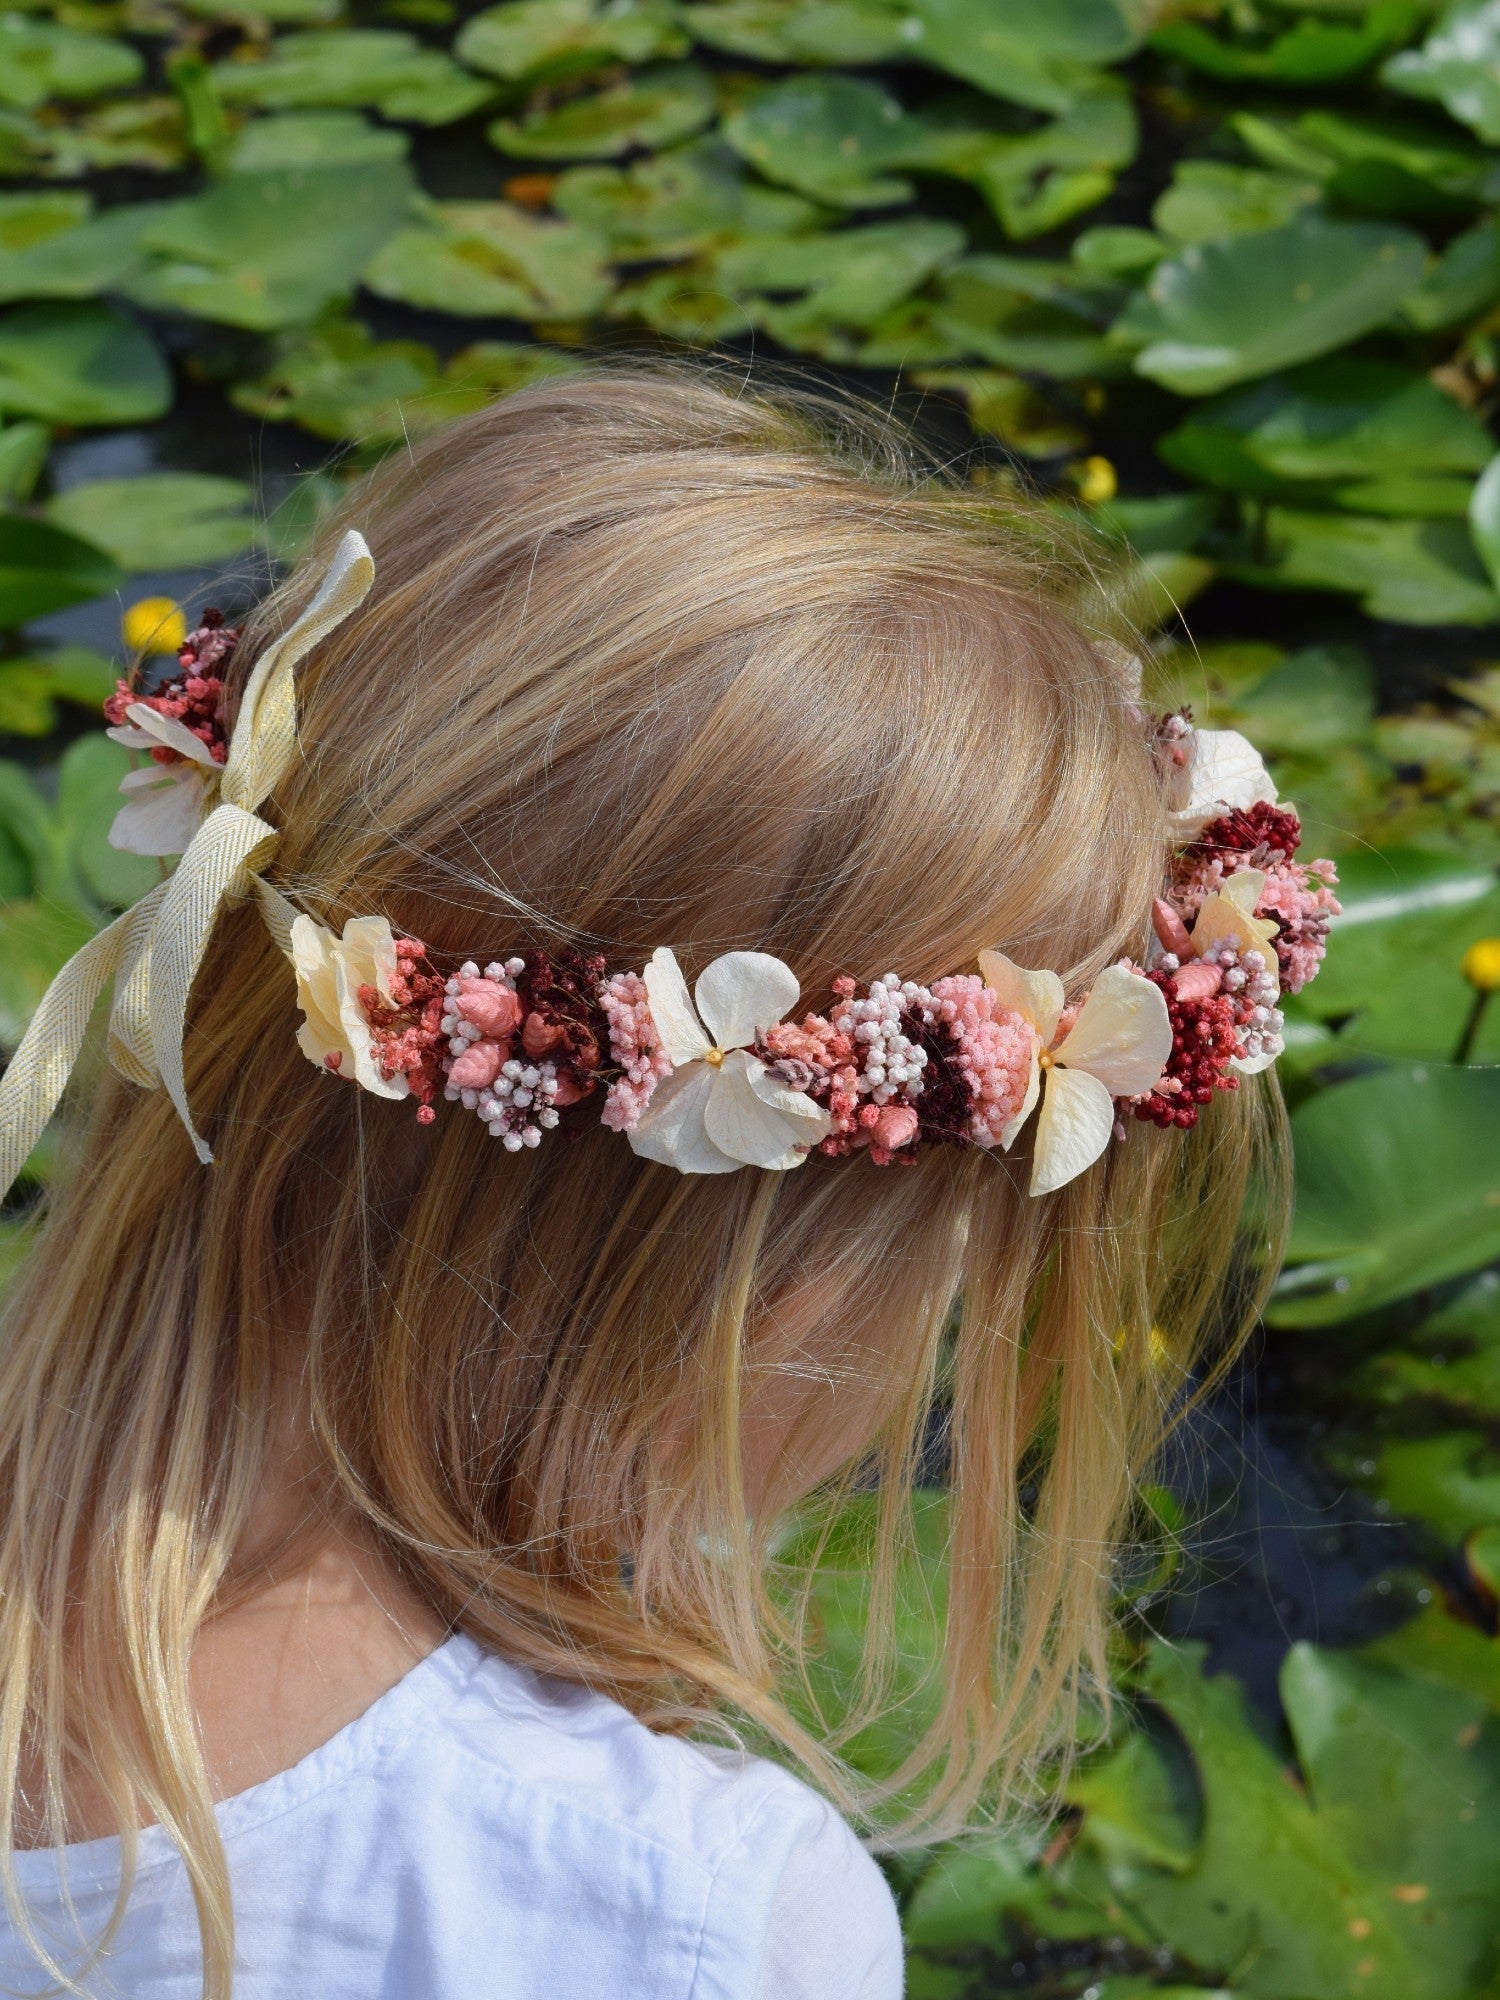 Bonnie - Crown of Flowers children